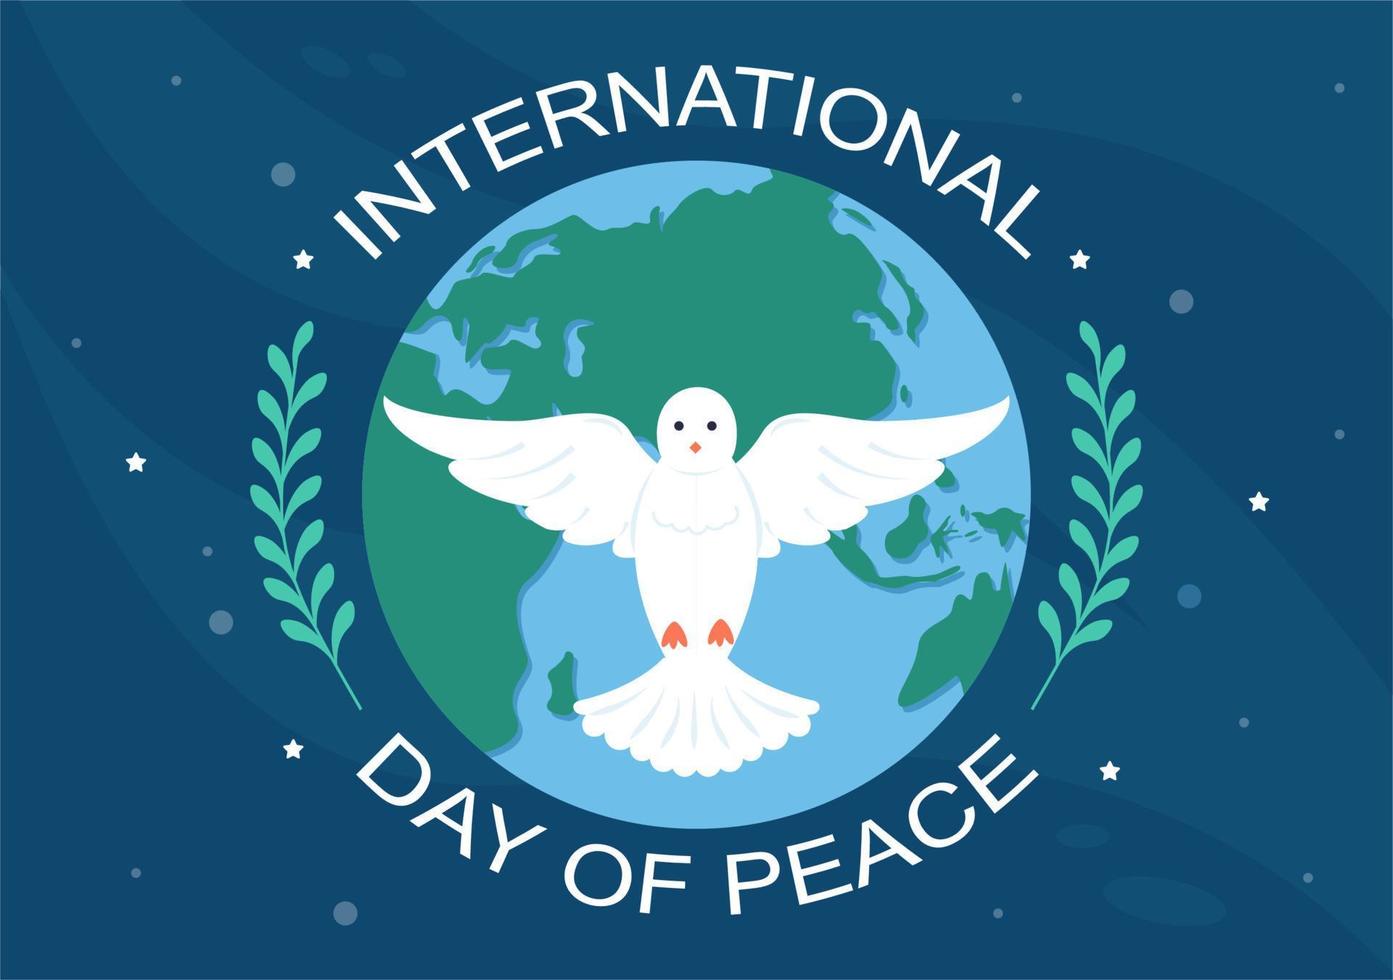 illustrazione del fumetto della giornata internazionale della pace con le mani, il piccione, il globo e il cielo blu per creare prosperi nel mondo in un design piatto vettore